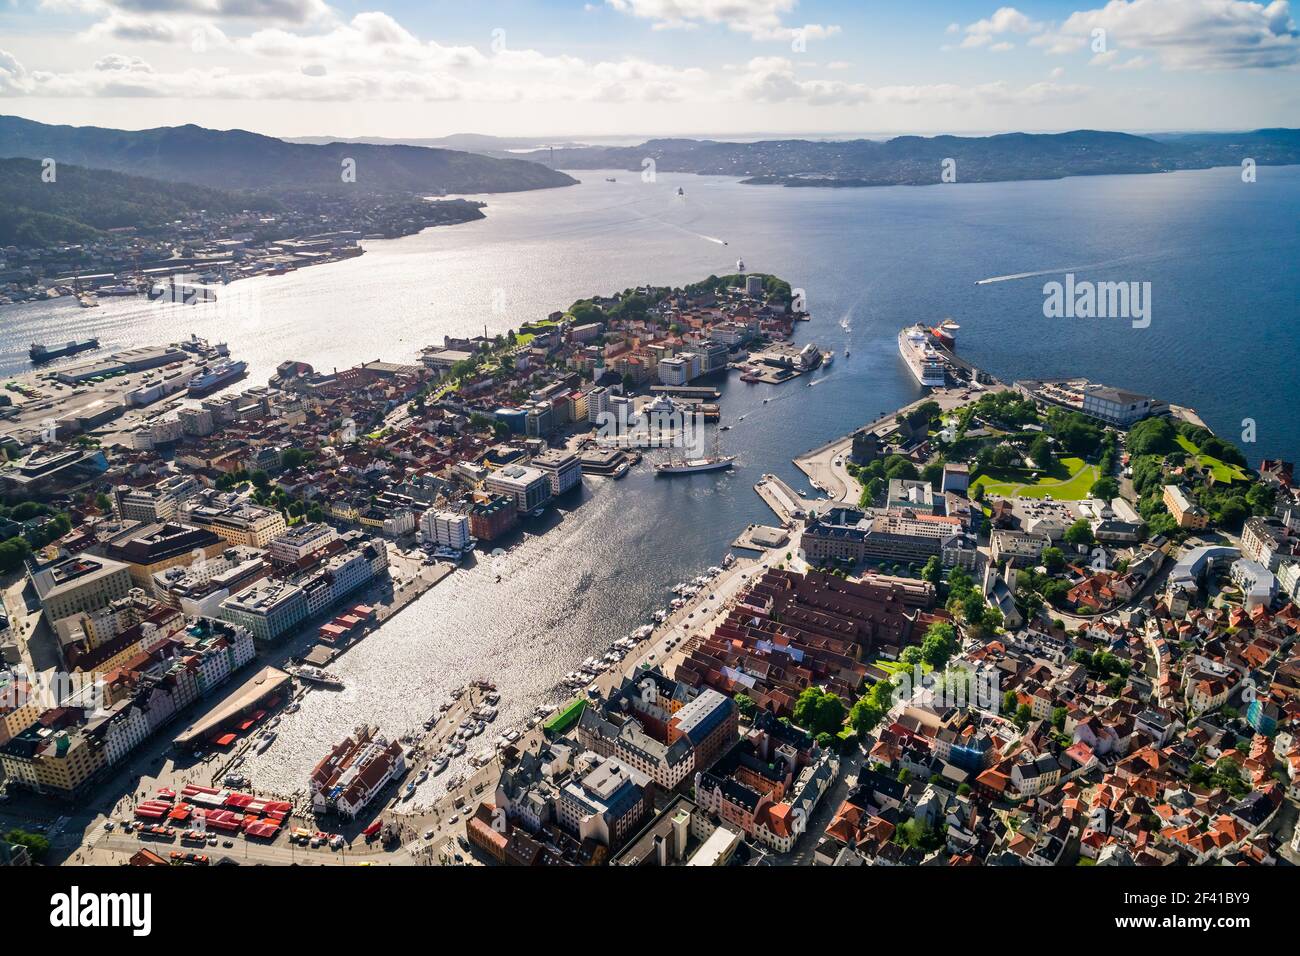 Bergen ist eine Stadt in Südschweden an der Westküste von Norwegen. Bergen ist die zweitgrößte Stadt in Norwegen. Der Blick von der Höhe des Vogelflugs. Antenne FPV drone Flüge. Stockfoto